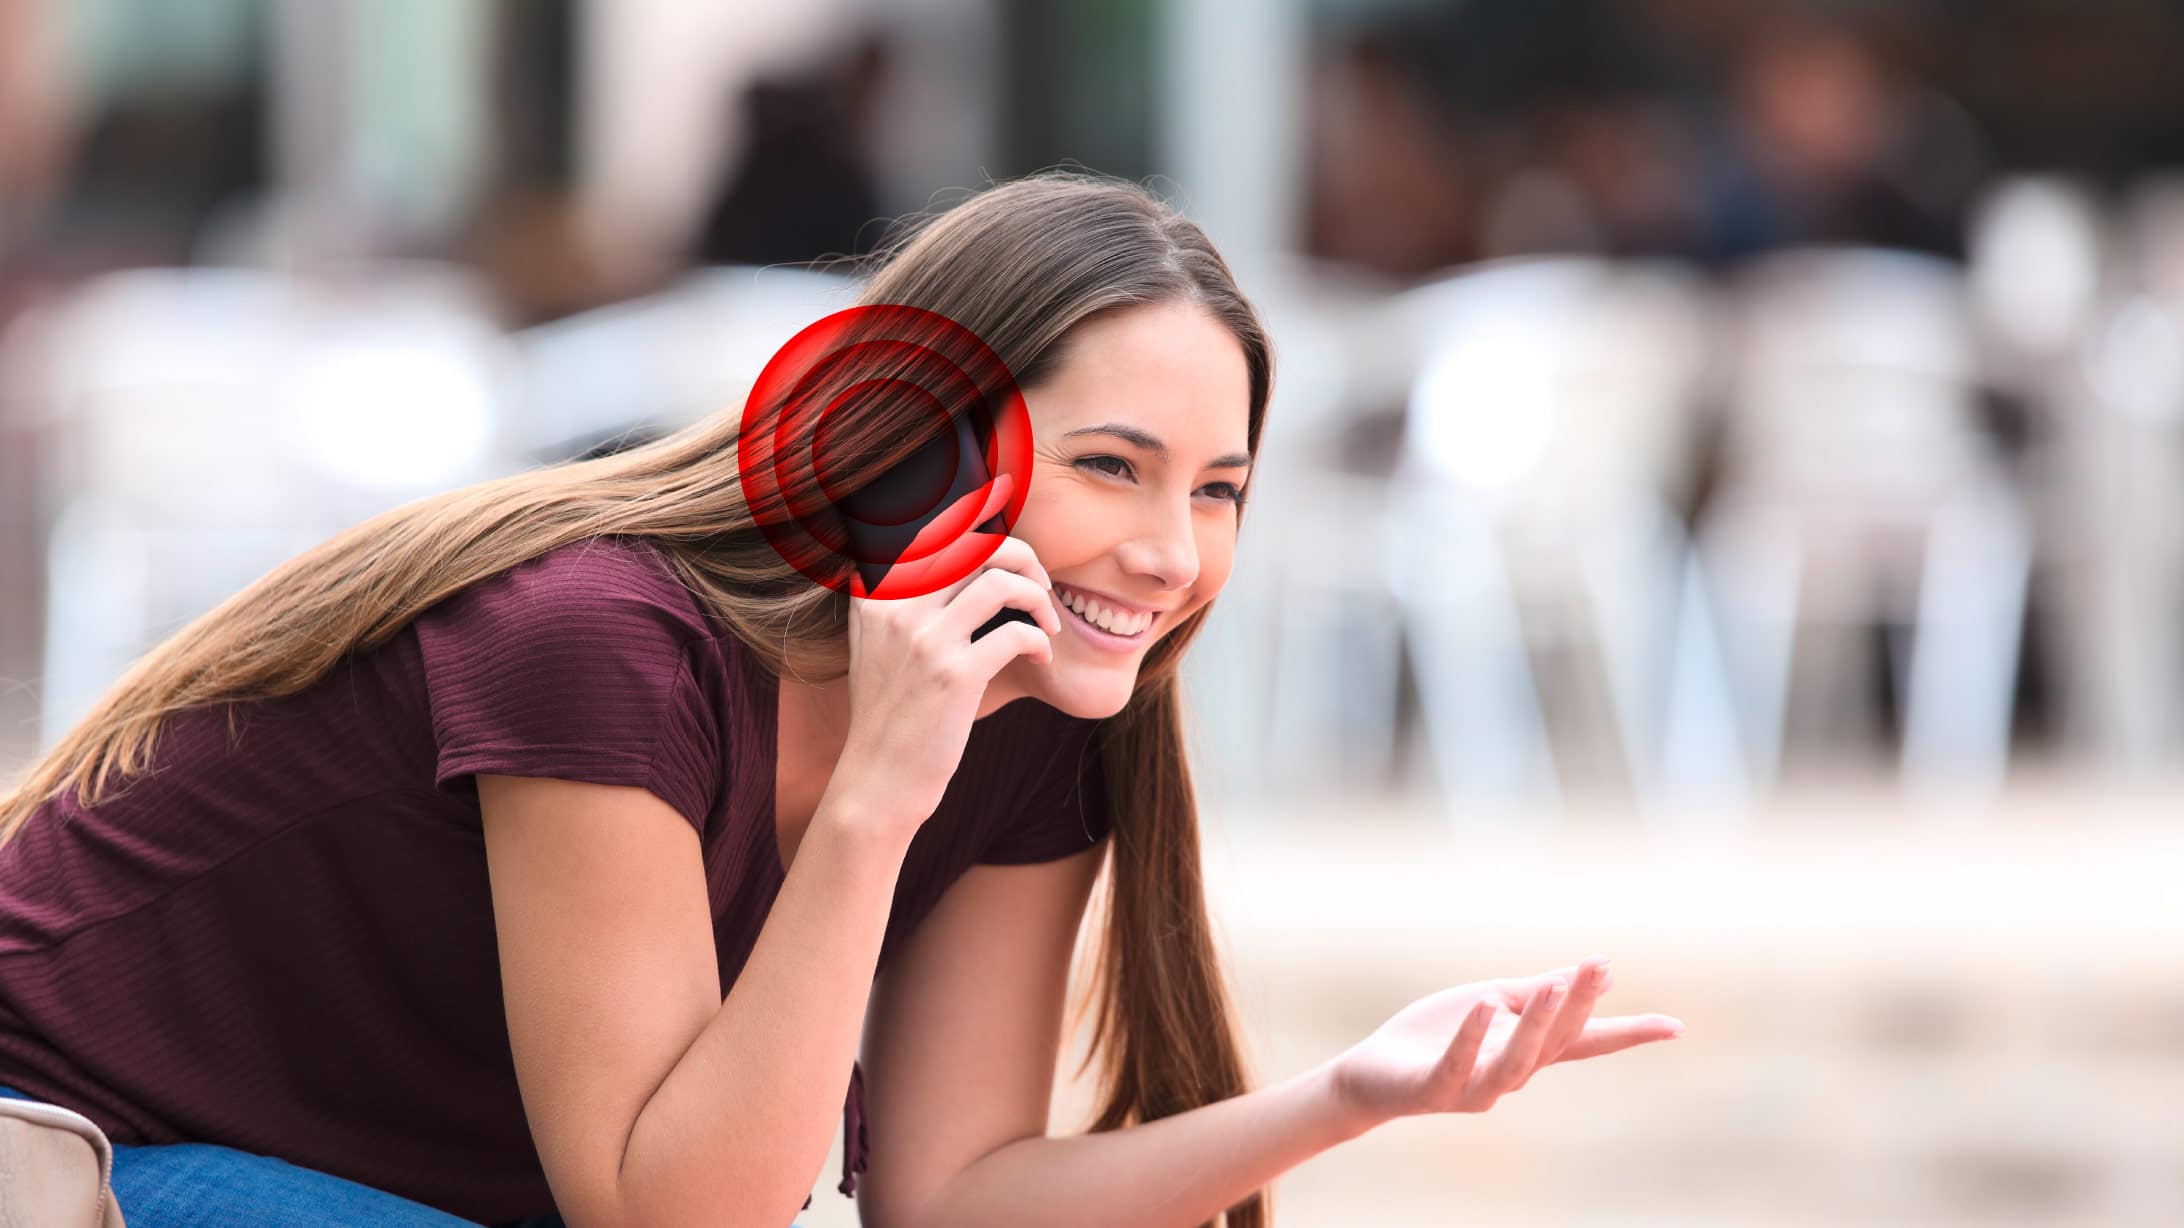 telefonierende junge Dame mit rotem Kreis am Ohr, das Krebs symbolisiert